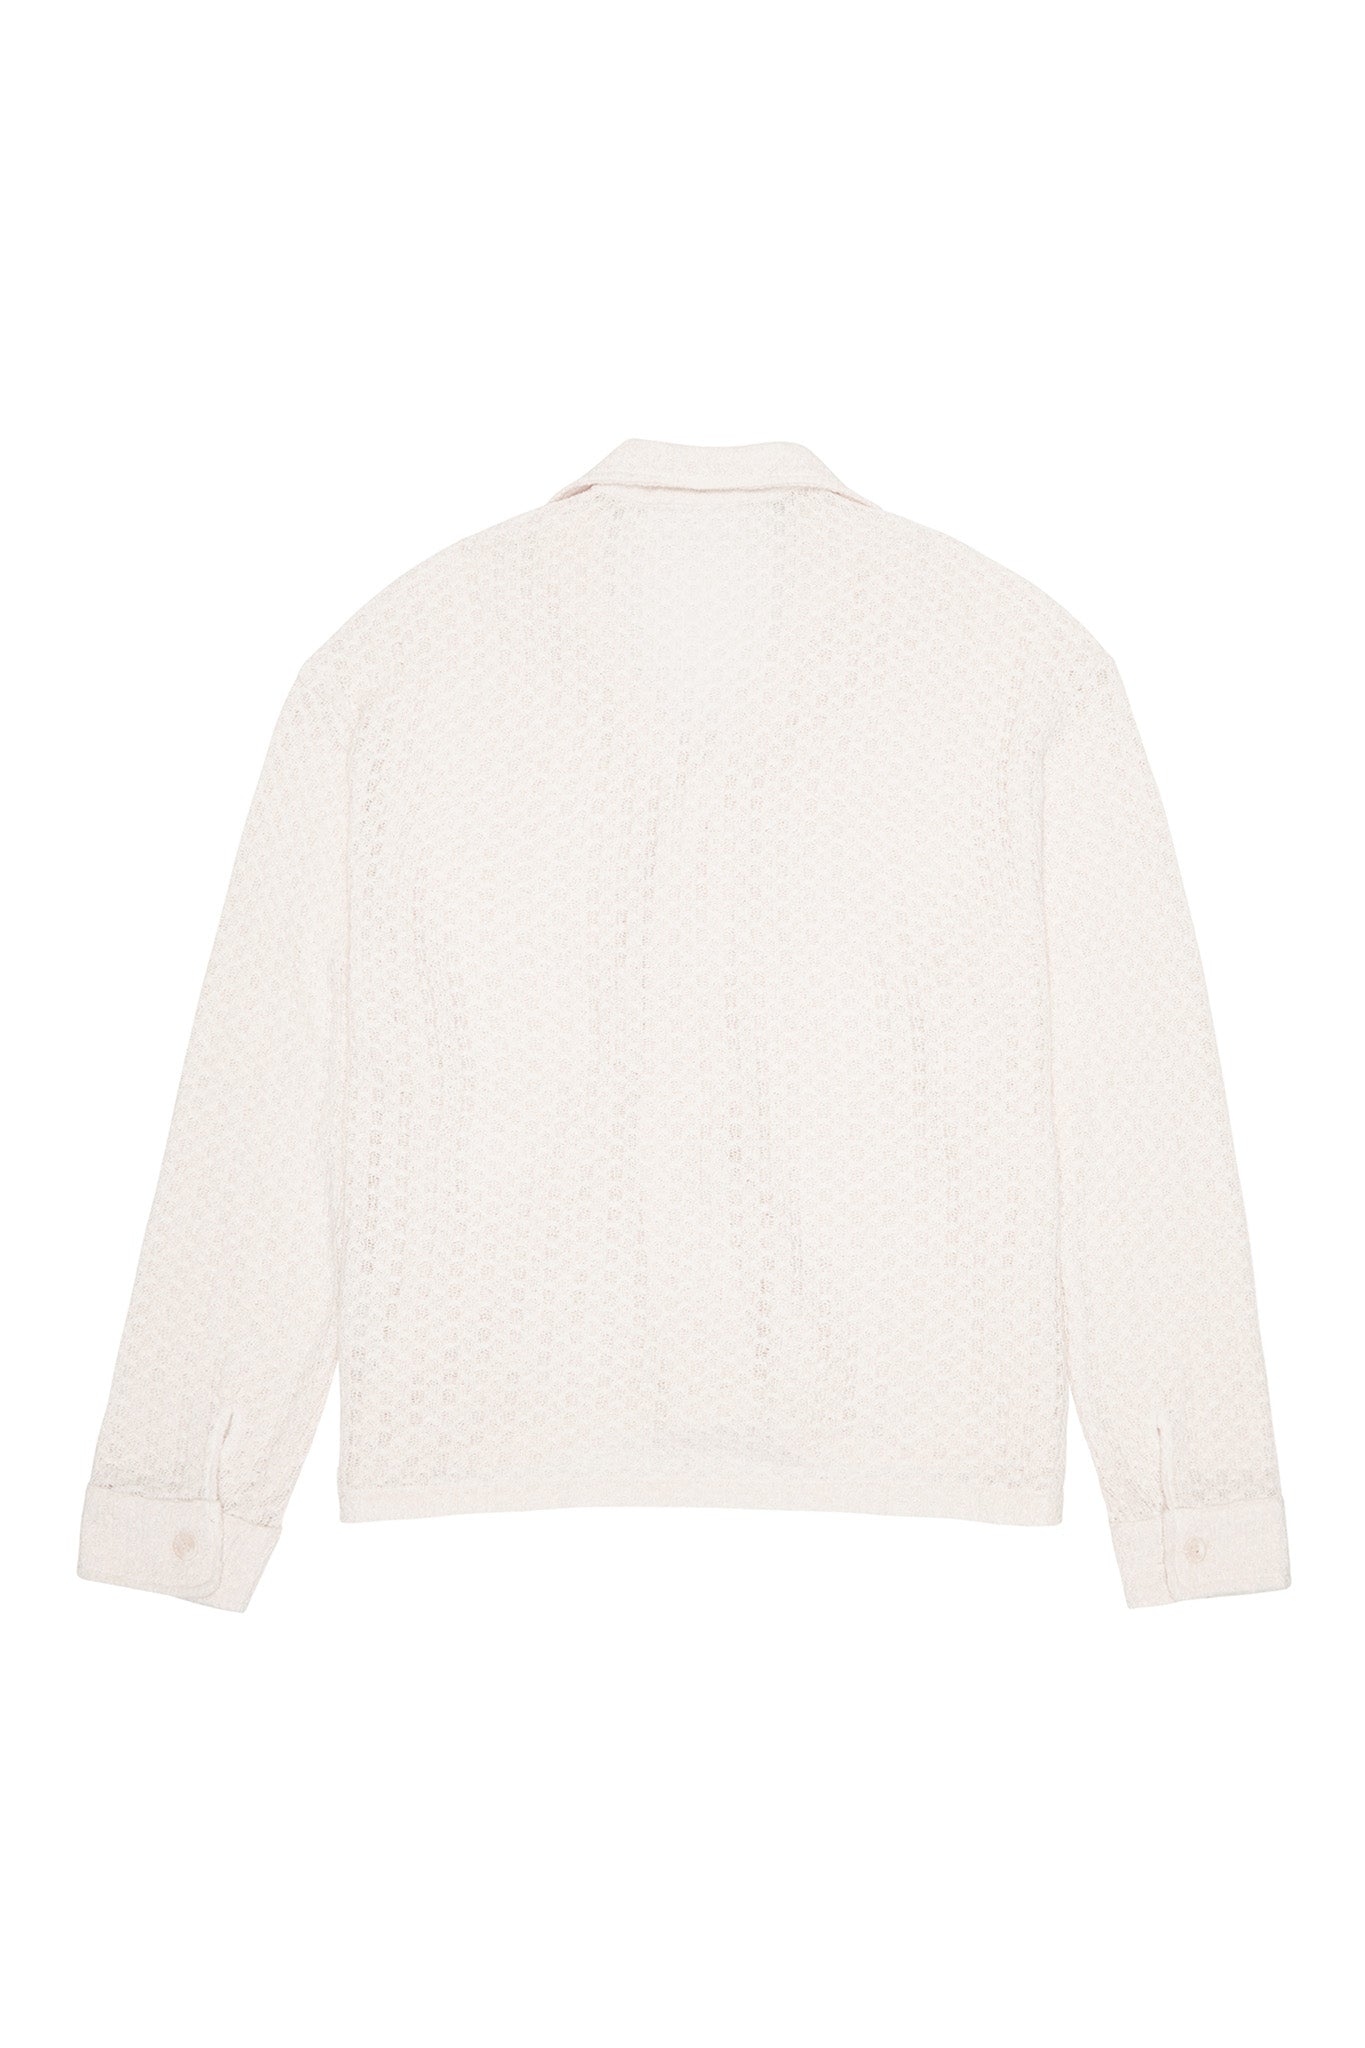 about---blank.comlong sleeve knitted shirt ecru